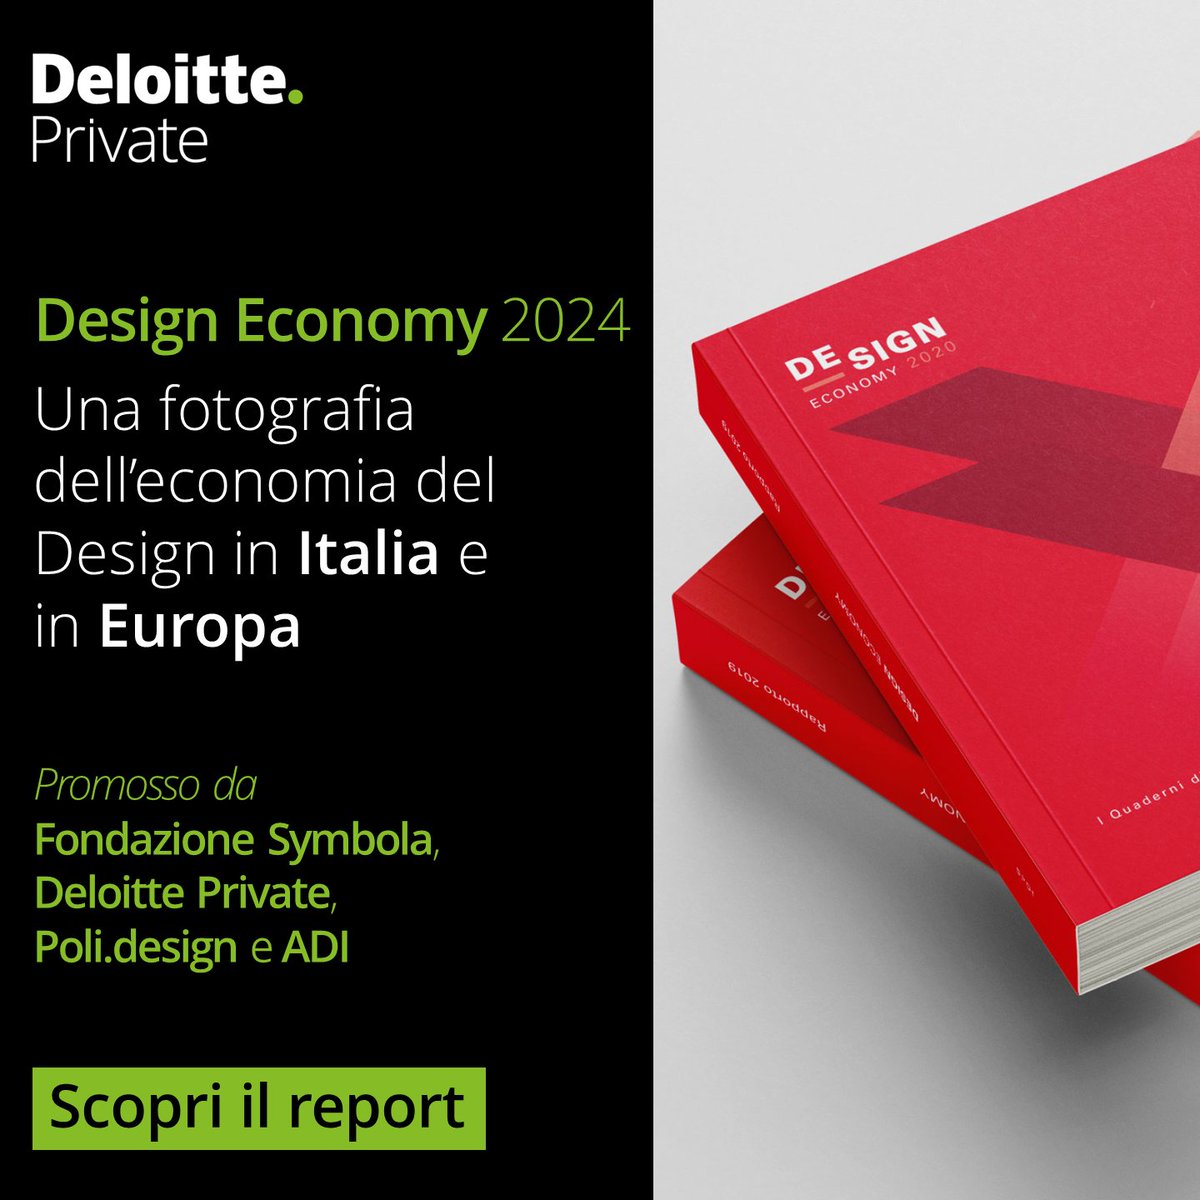 È stata presenta oggi la VII edizione del Report Design Economy realizzata da Deloitte Private, @SymbolaFondazio, @POLI_design e ADI. Scarica il report e approfondisci i temi dell’analisi: web.deloitte/6019wVfUt